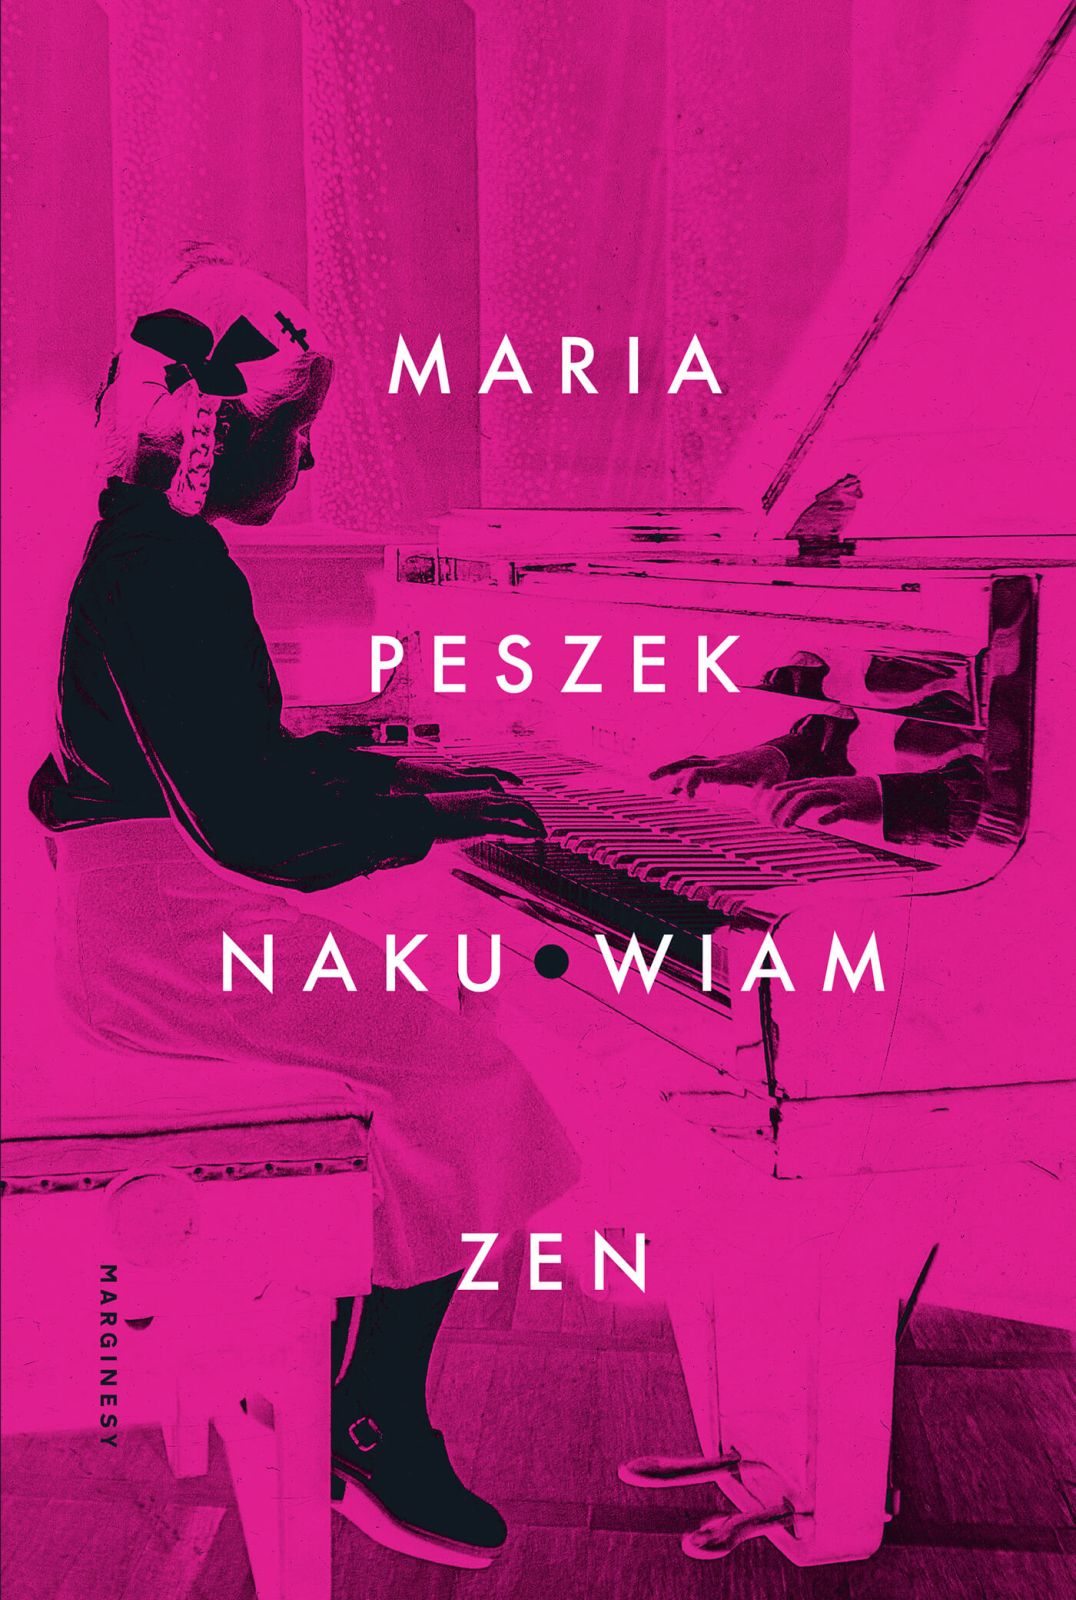 Nowa książka Marii Peszek Naku*wiam Zen